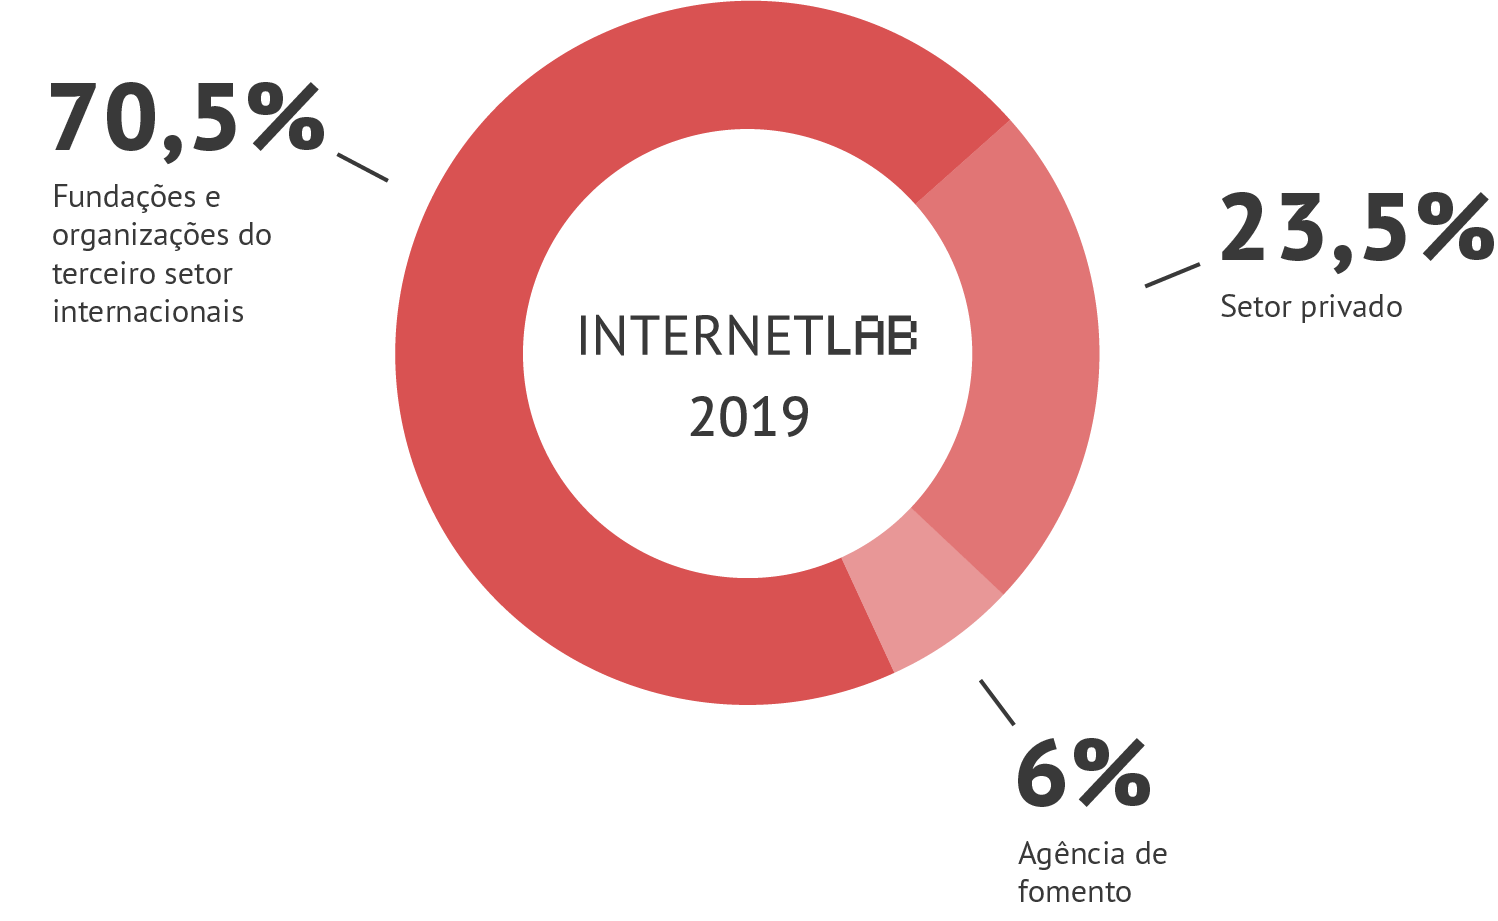 Gráfico em pizza com as informações de fontes de financiamento do InternetLab em 2019. Sendo 70,5% vindo de fundações e organizações do terceiro setor internacionais, 6% de agências de fomento e 23,5% do setor privado.